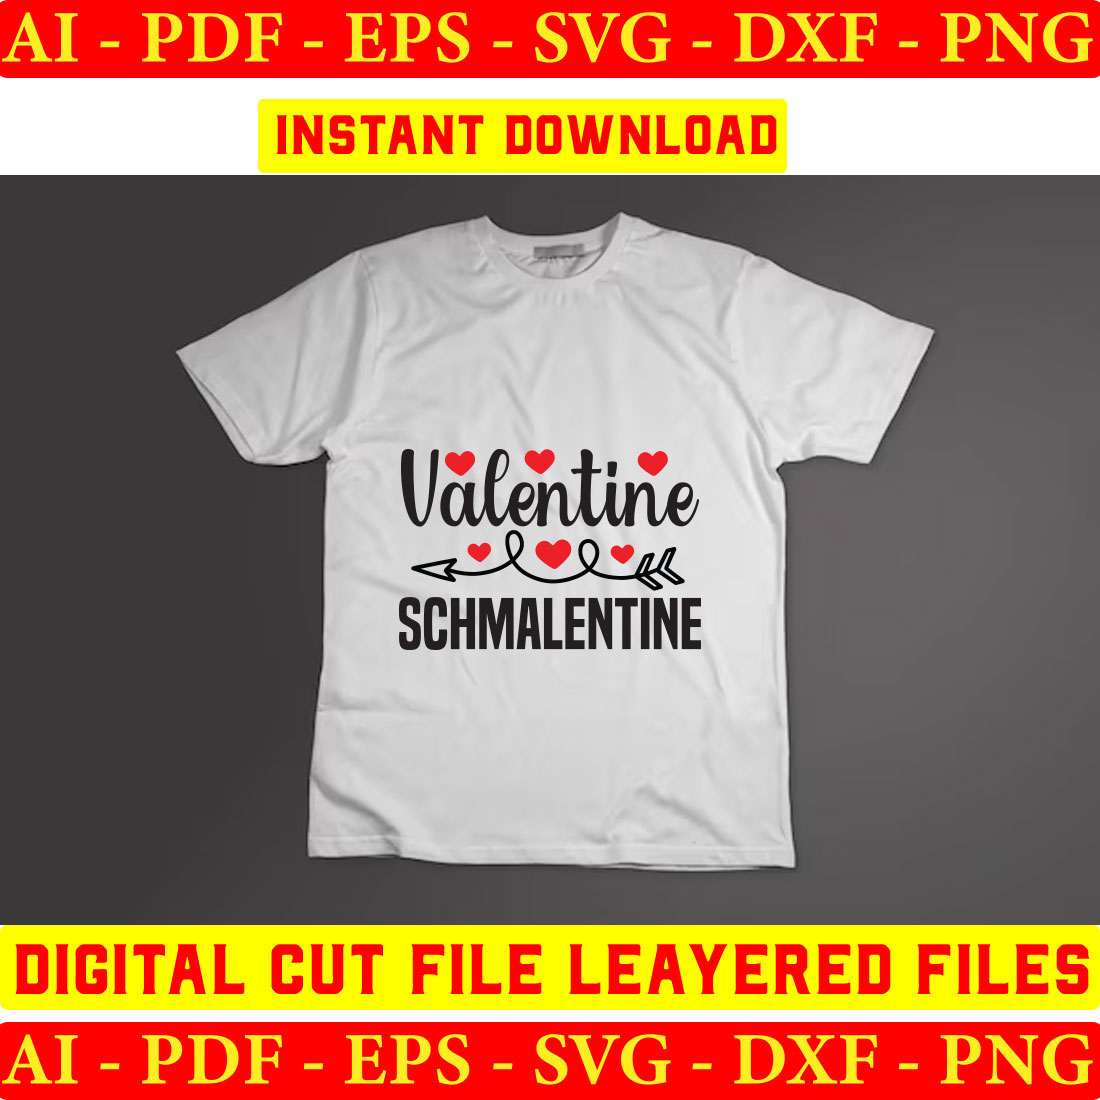 T - shirt that says valentine is a schmaentine.